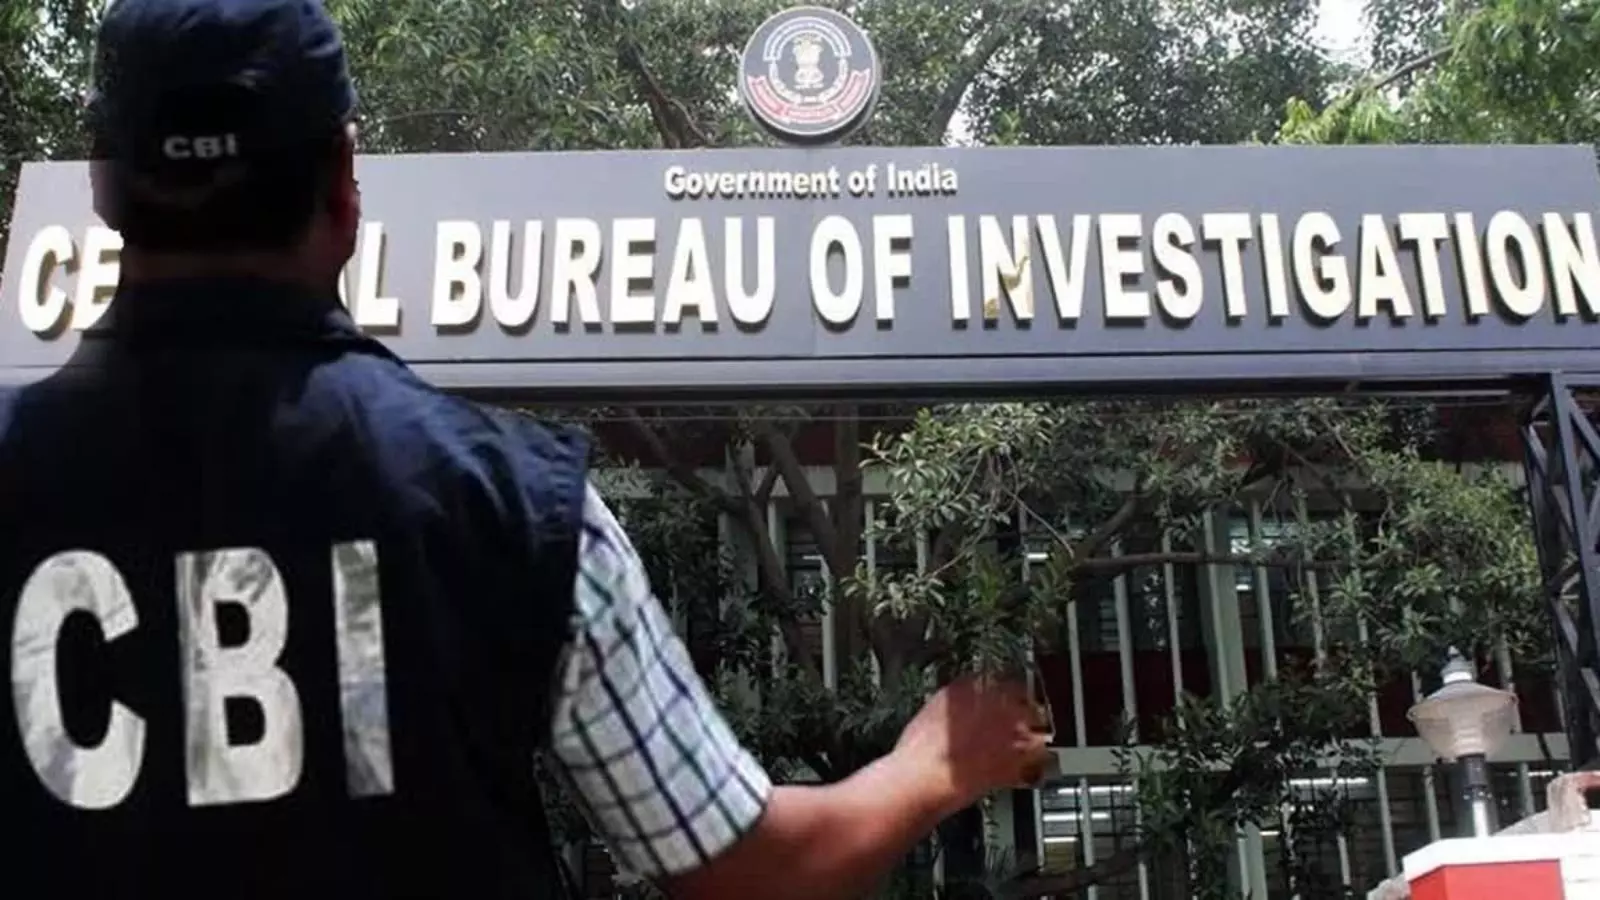 NEET Row: CBI ने गुजरात में 7 जगहों पर की छापेमारी, झारखंड का एक पत्रकार गिरफ्तार